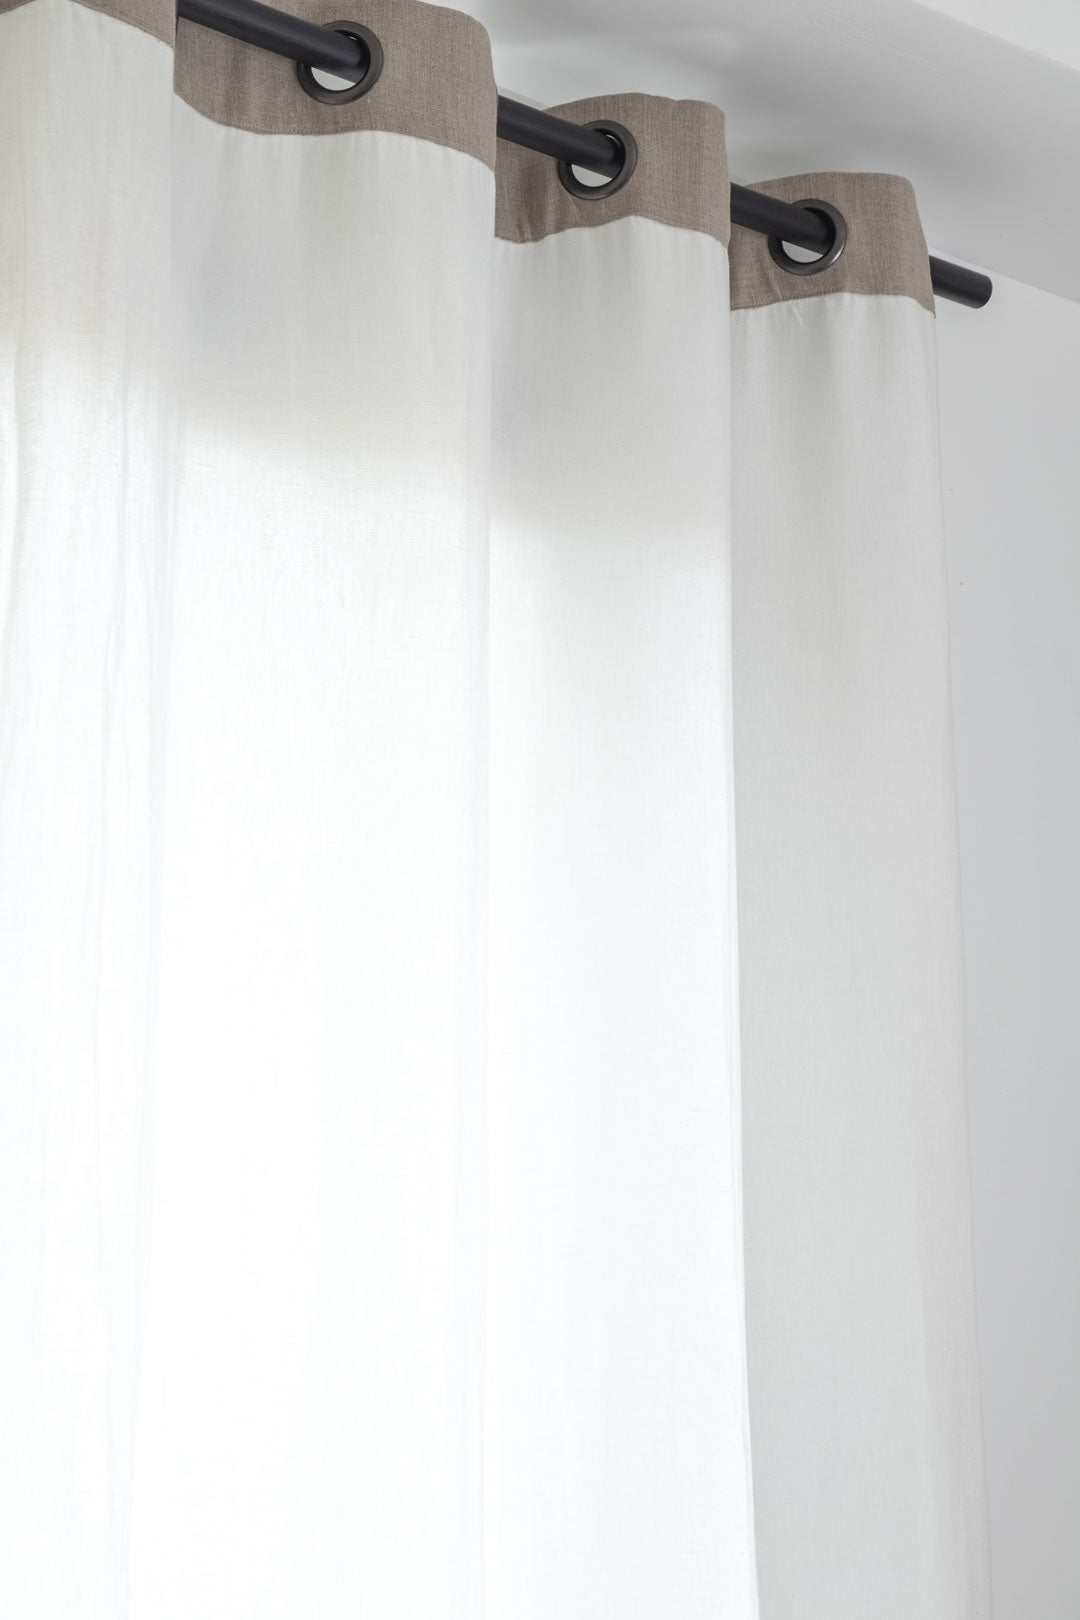 rideau en lin-finition en lin brute 140x280 cm oree blanc-epic